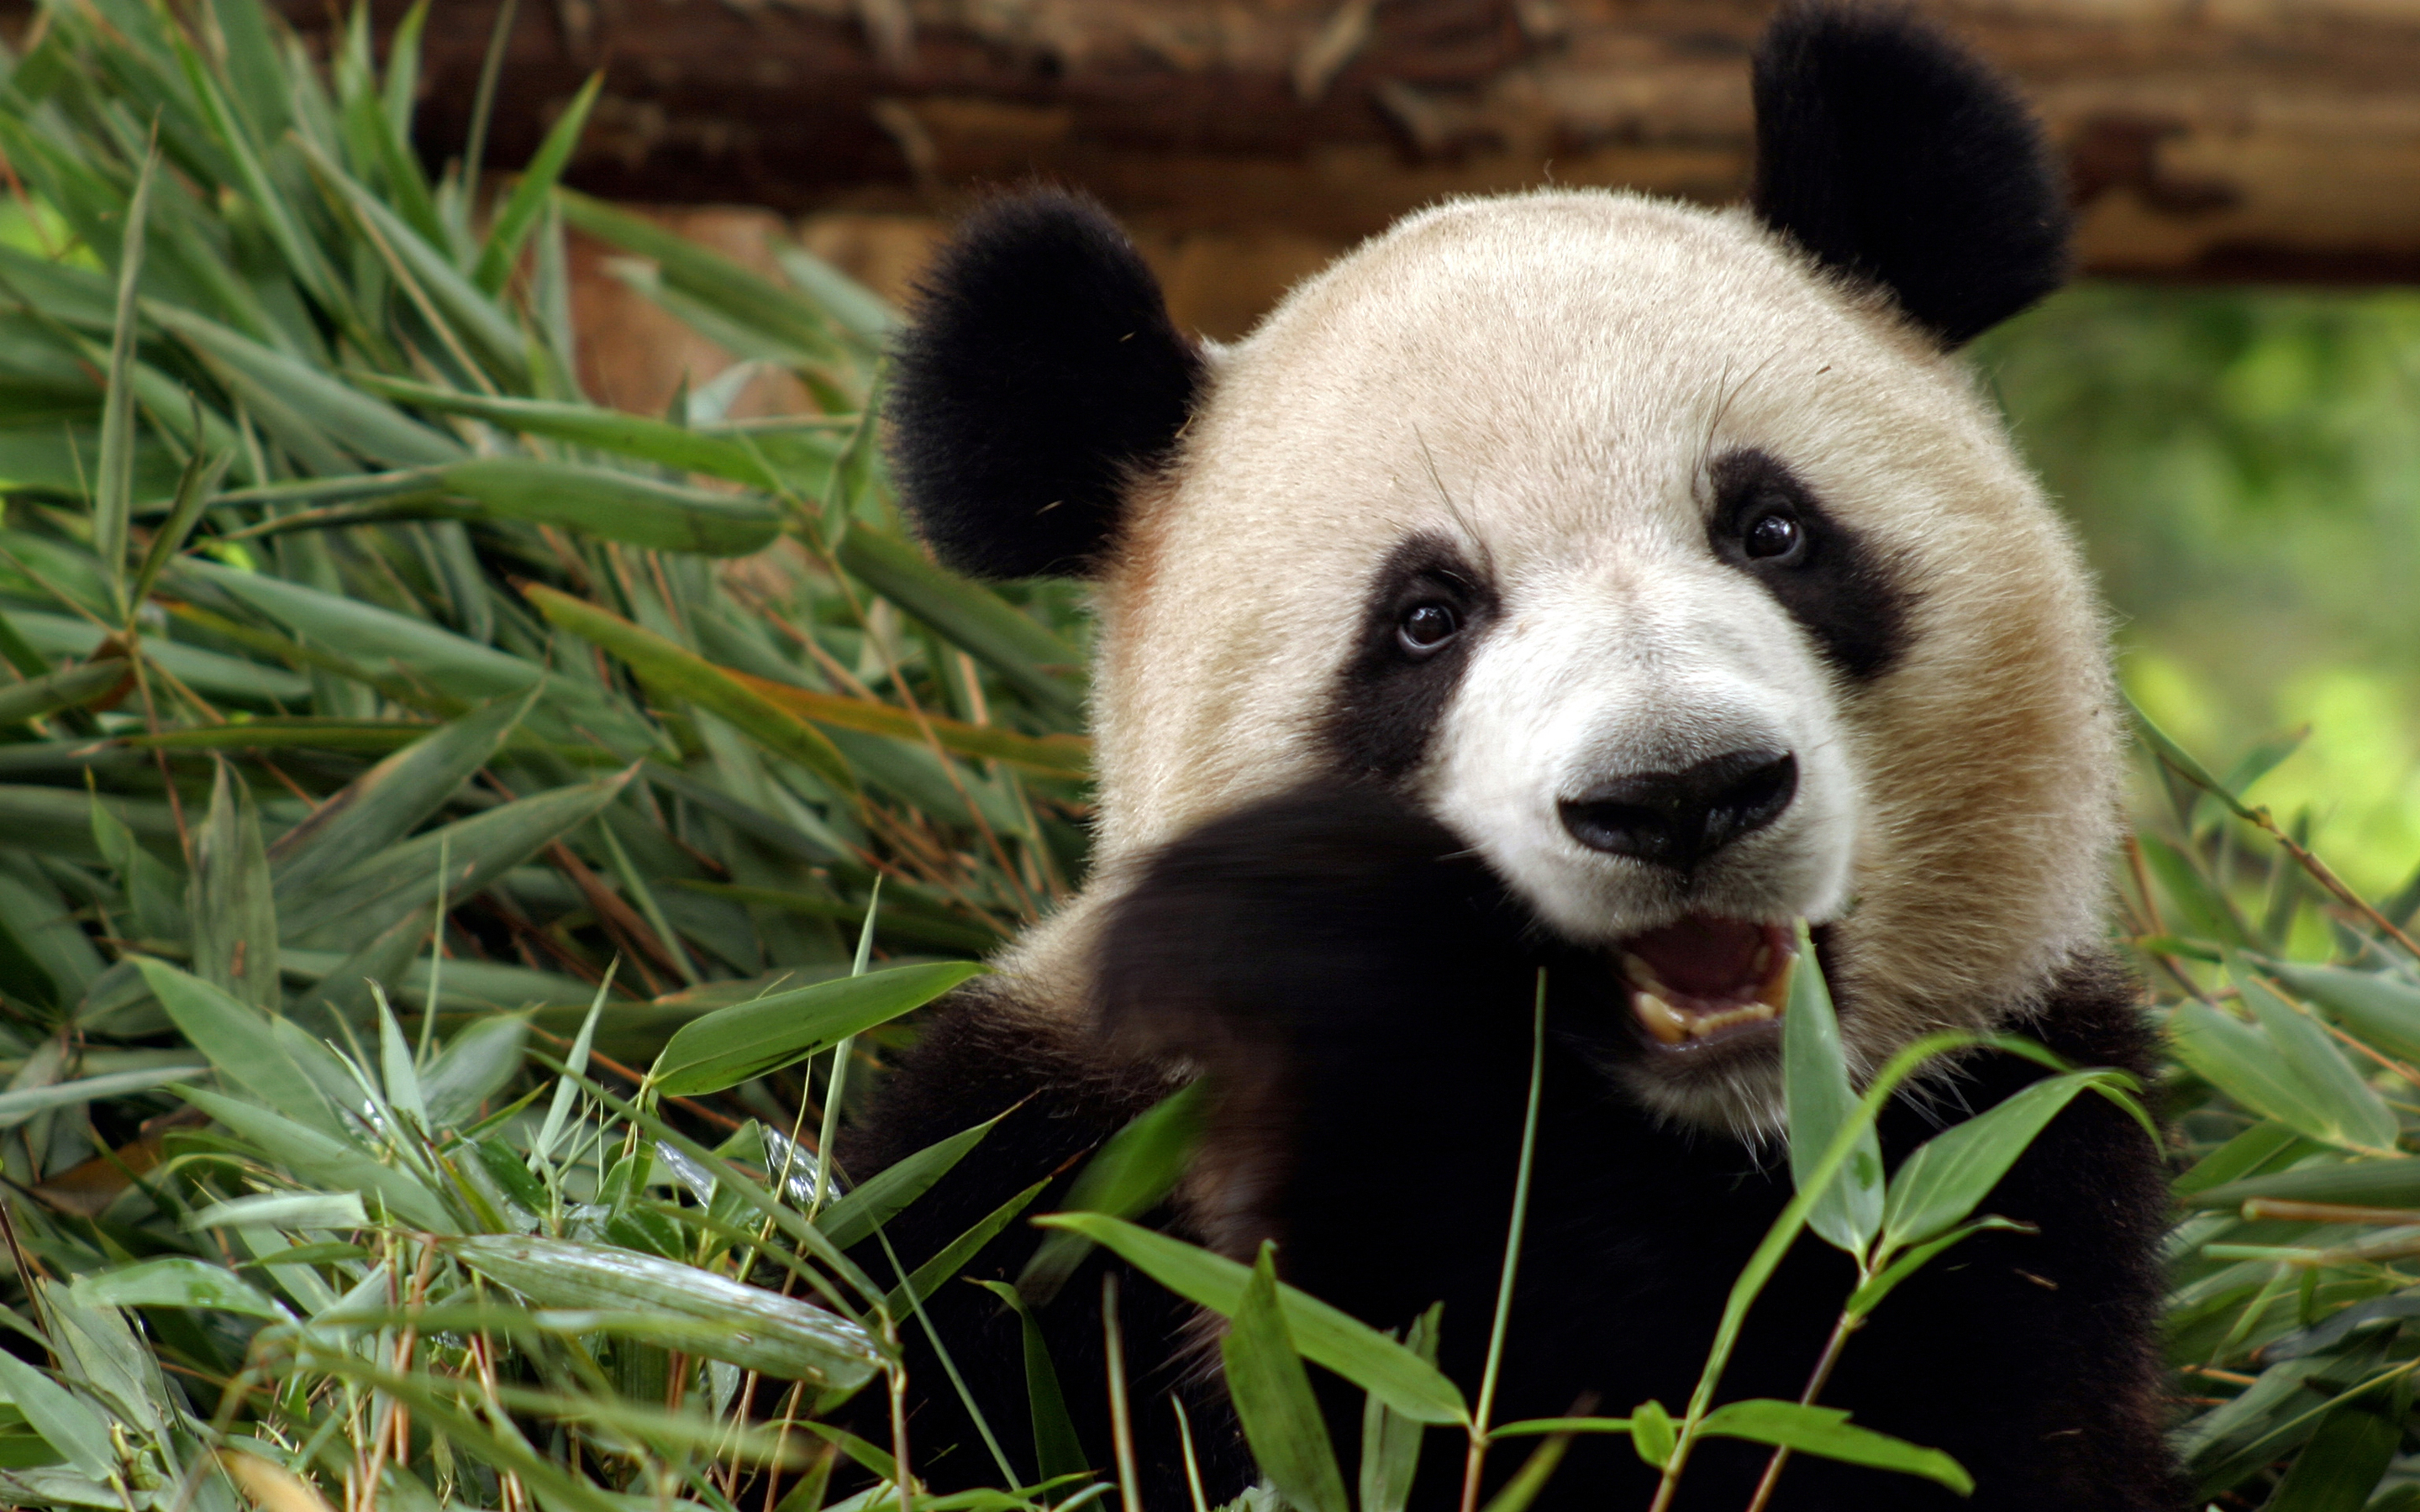 Panda HD Wallpaper | Background Image | 2880x1800 | ID ...